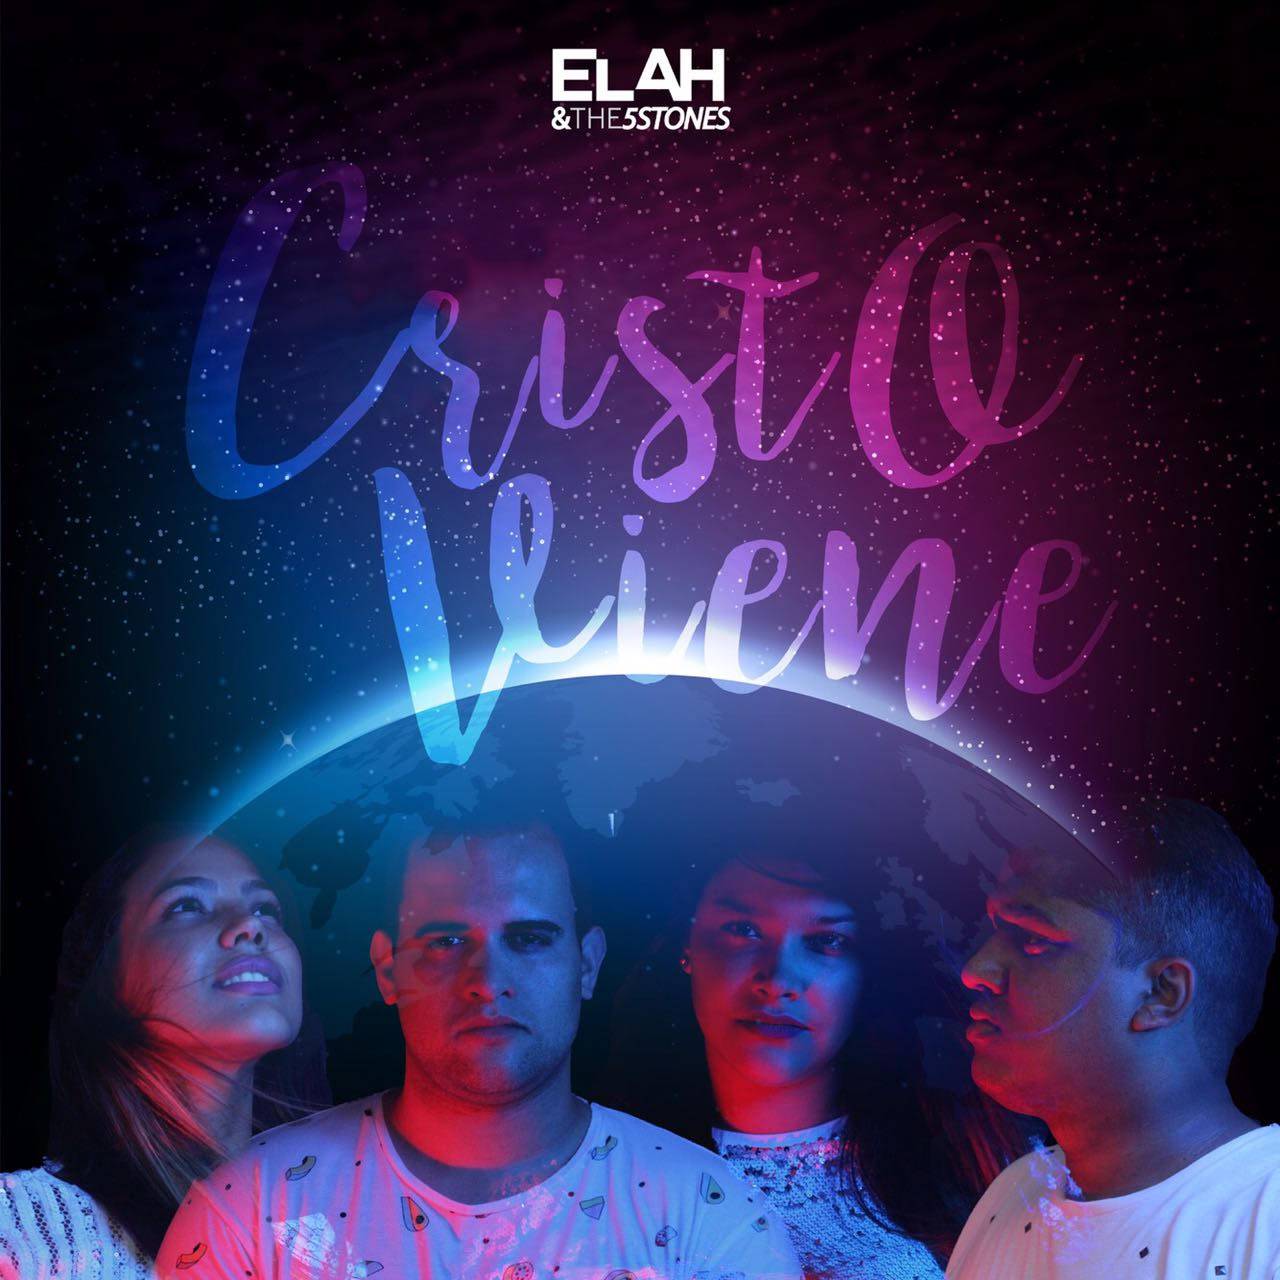 La agrupación ELAH & THE 5 STONES lanza su primer álbum musical “Cristo Viene”